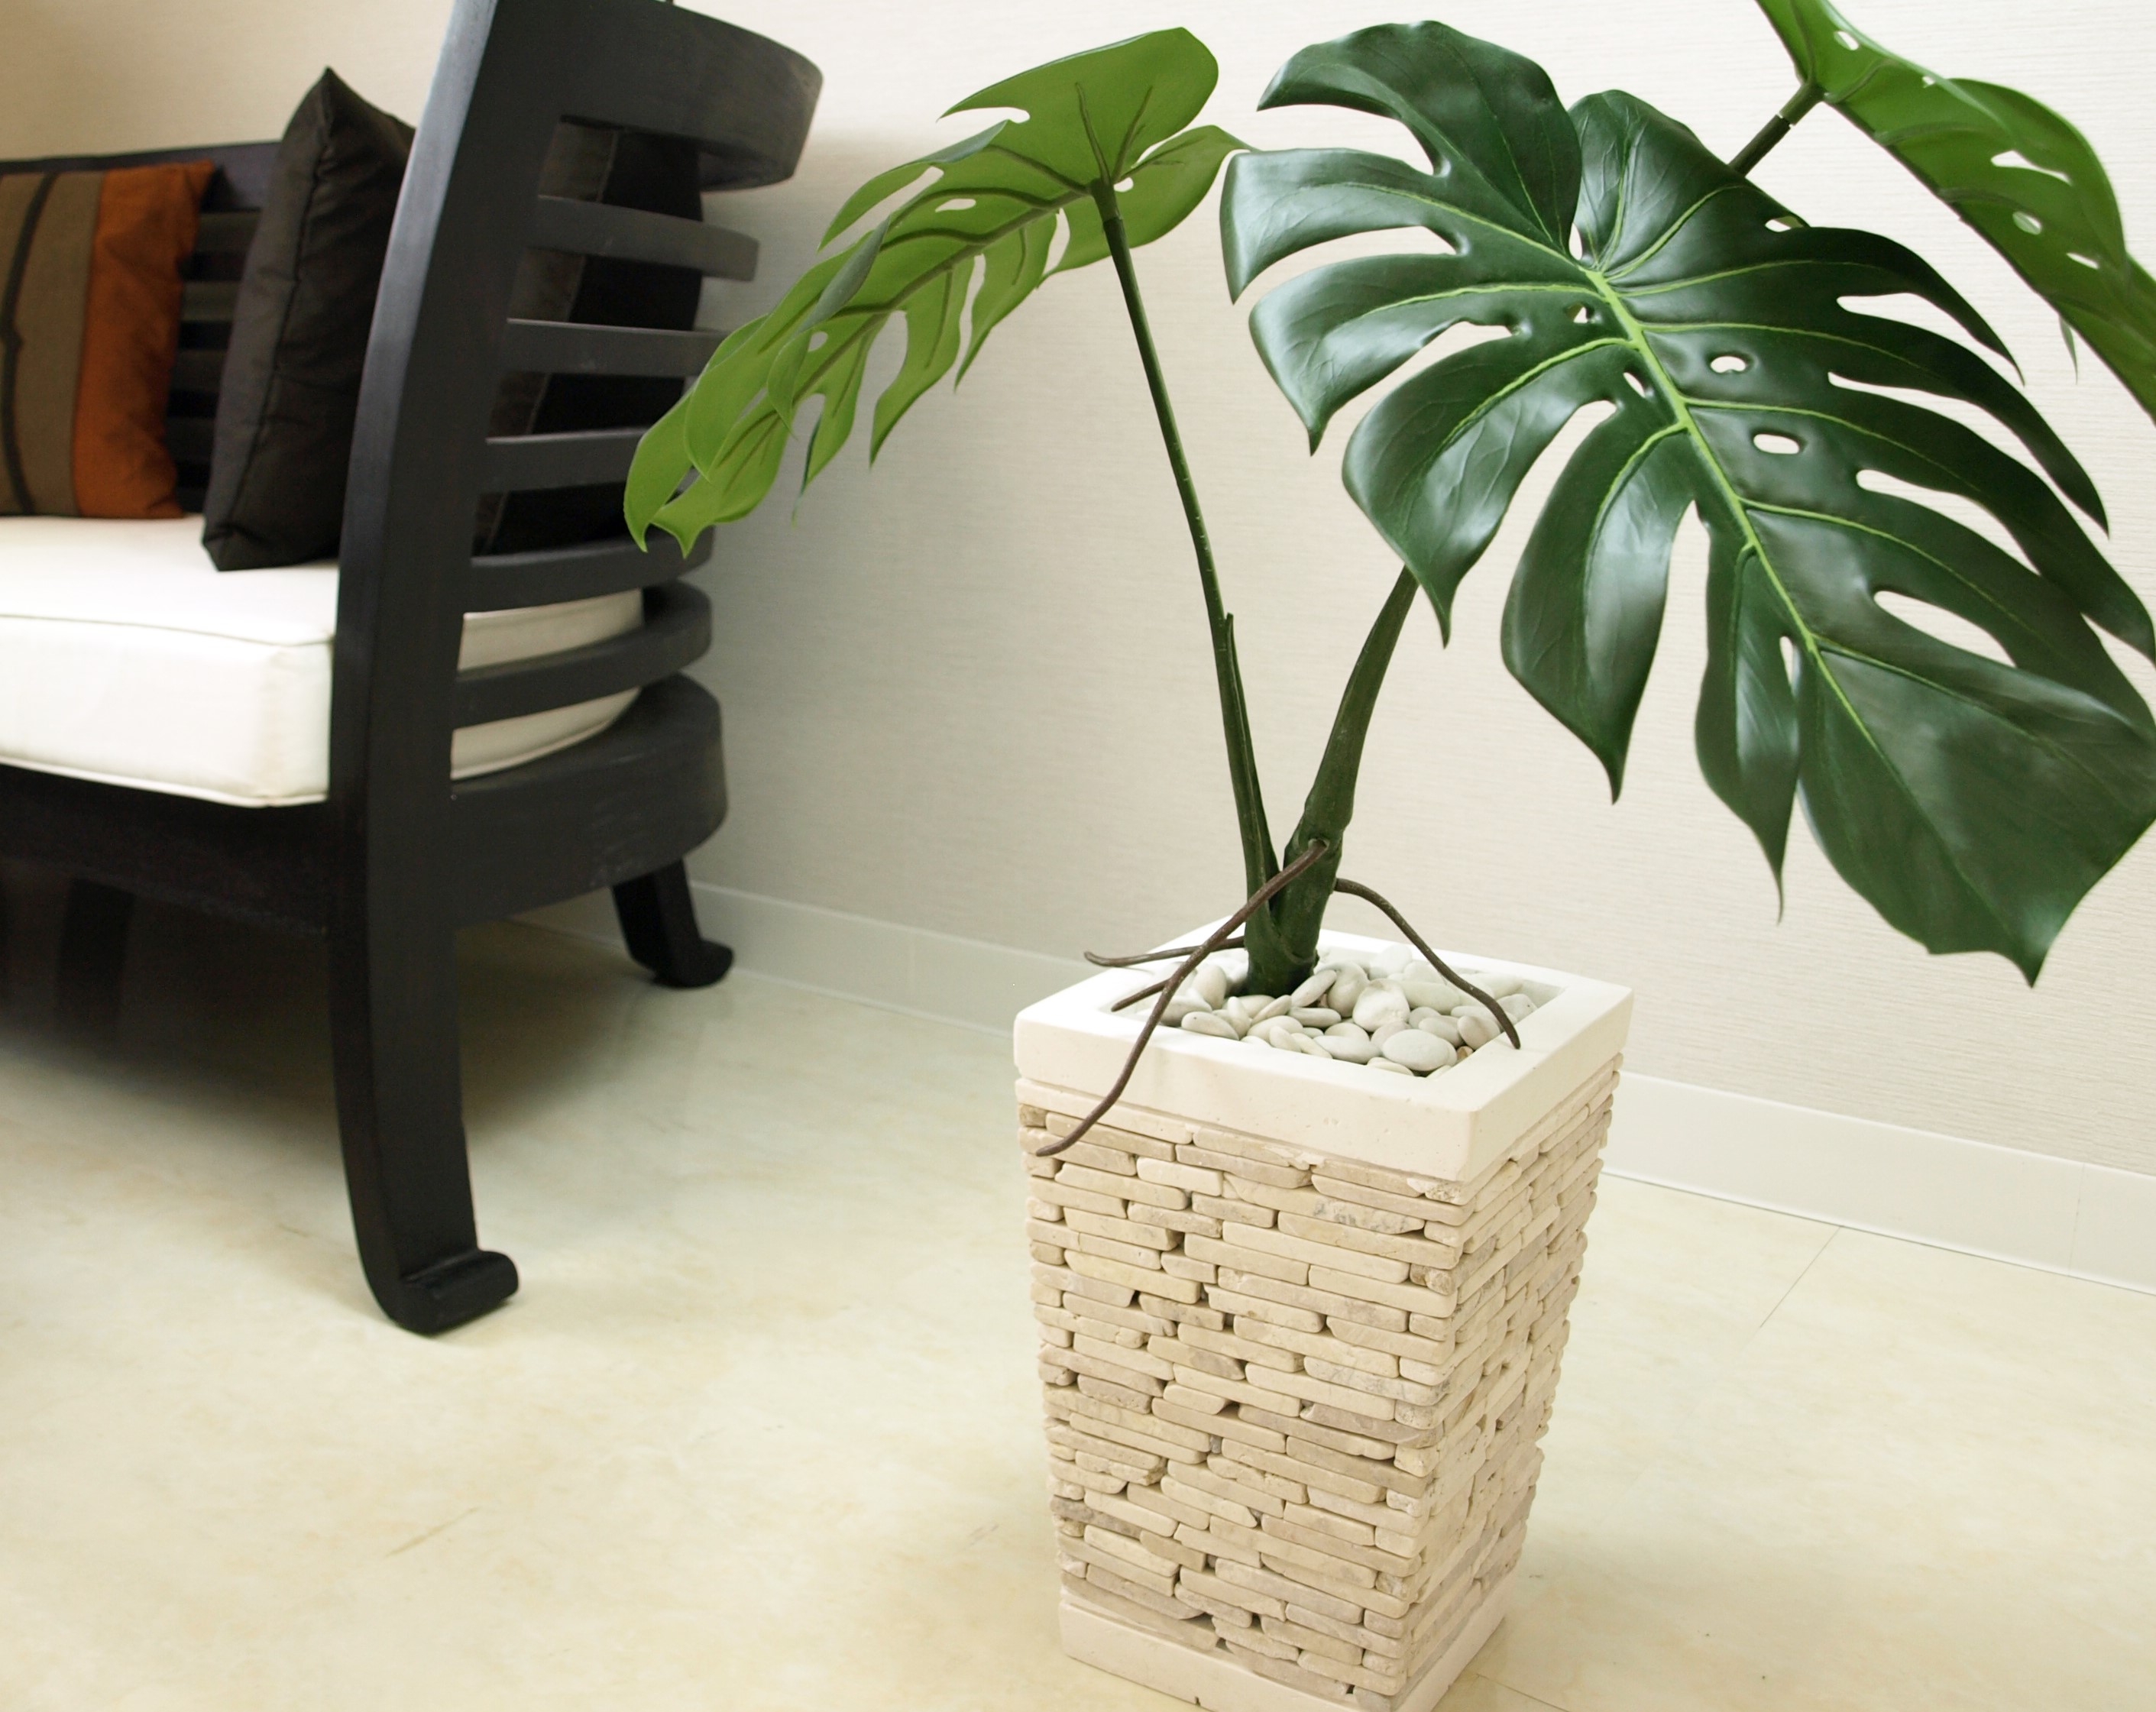 南国リゾート感がアップ 名脇役の小物 しかも安い 観葉植物の植木鉢の化粧石 Cocobariコラム